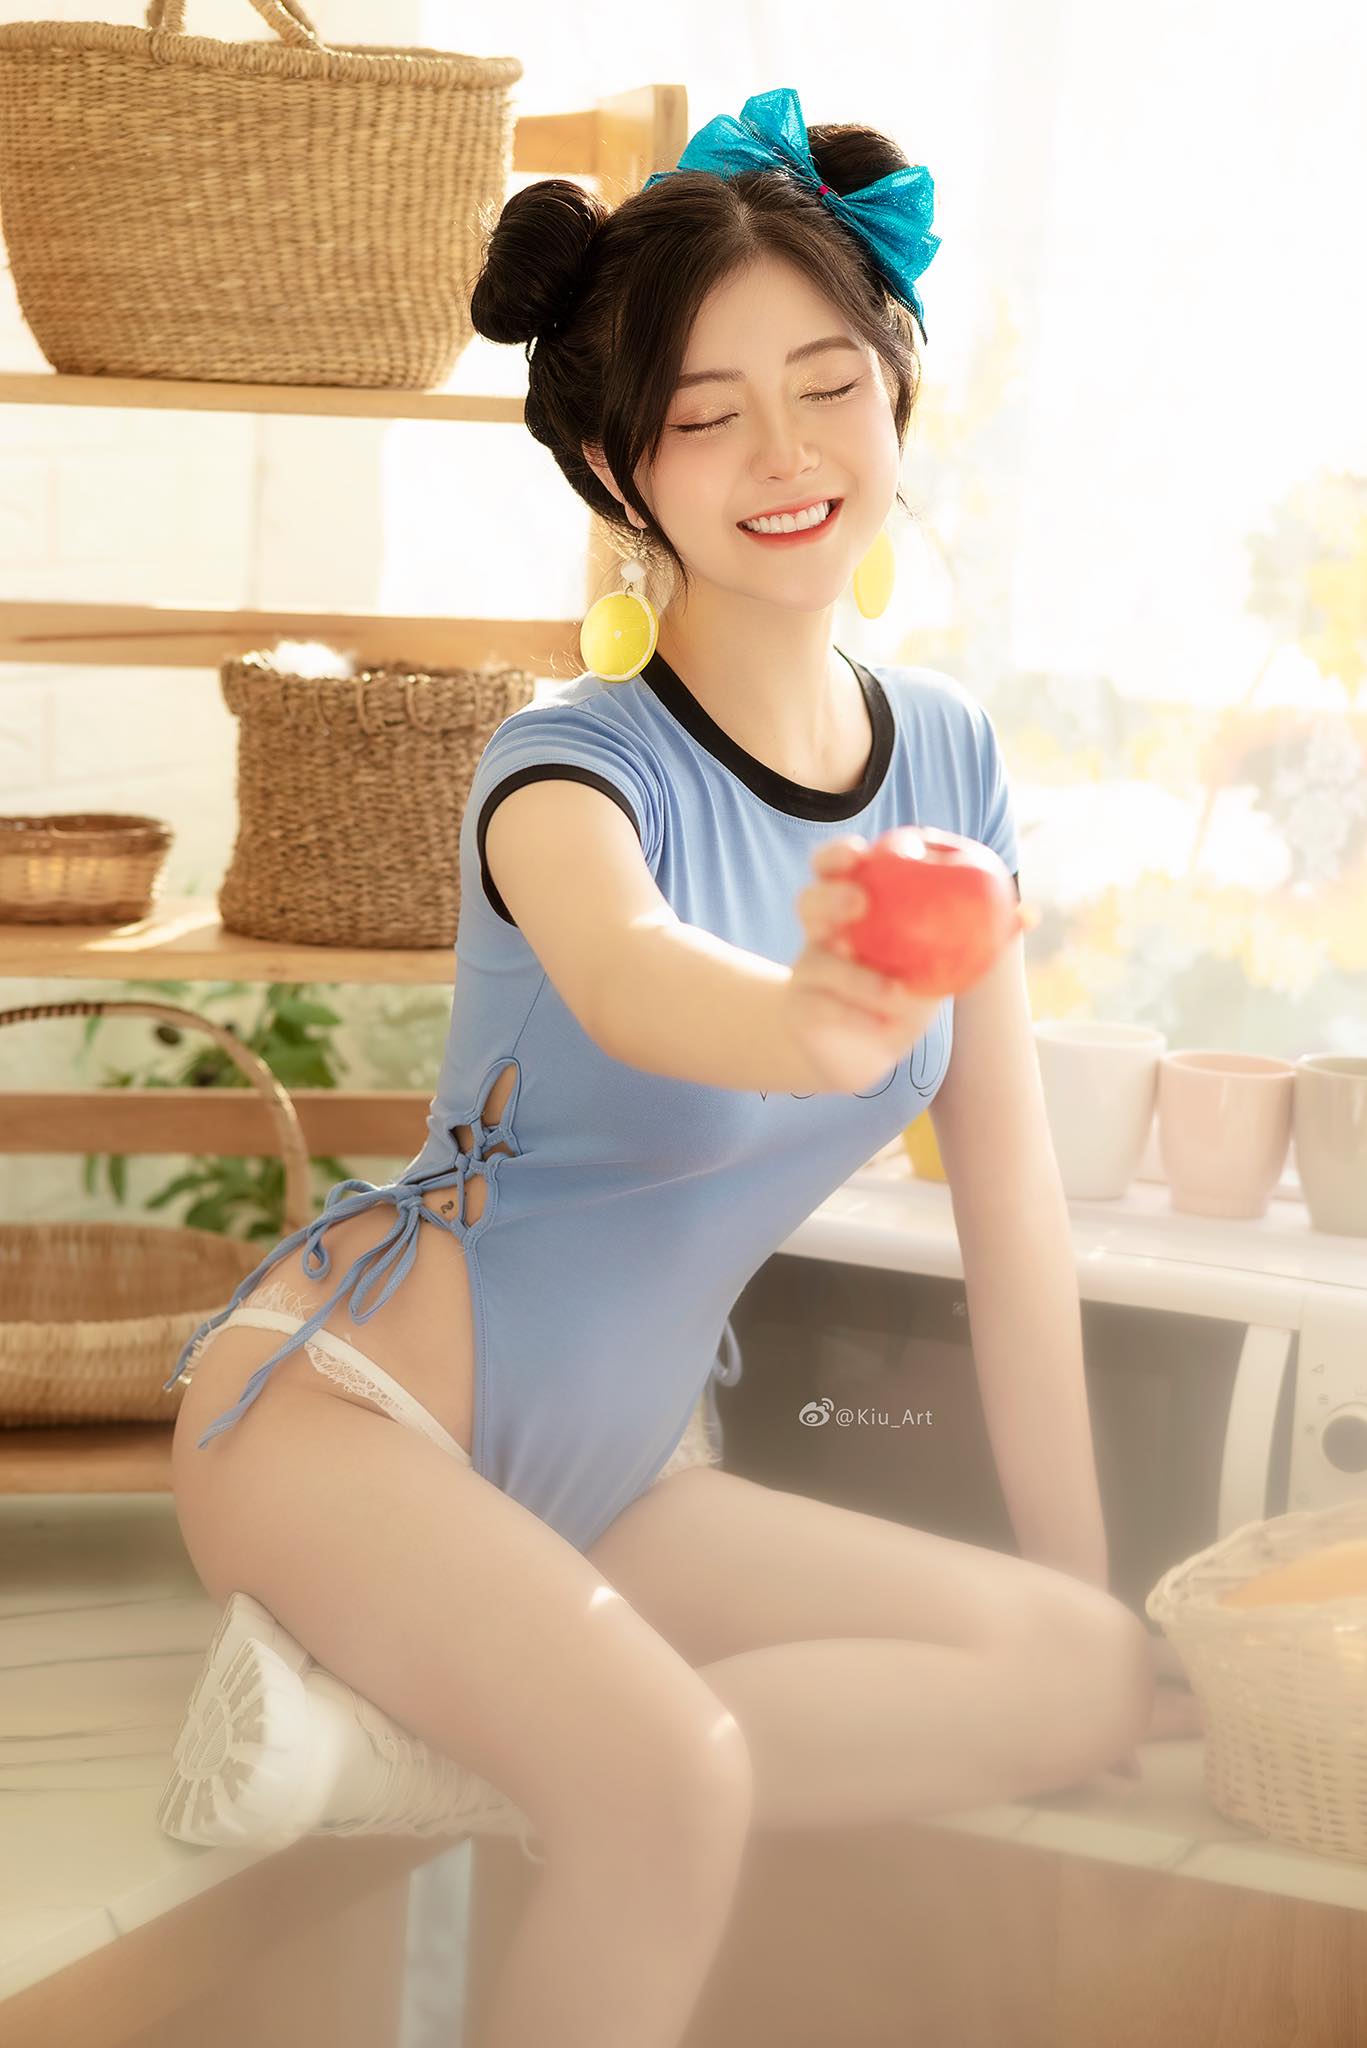 Hot girl Ba Vì “Trang Chuối” gợi cảm với phong cách Lolita, khoe điểm cơ thể hấp dẫn - 4